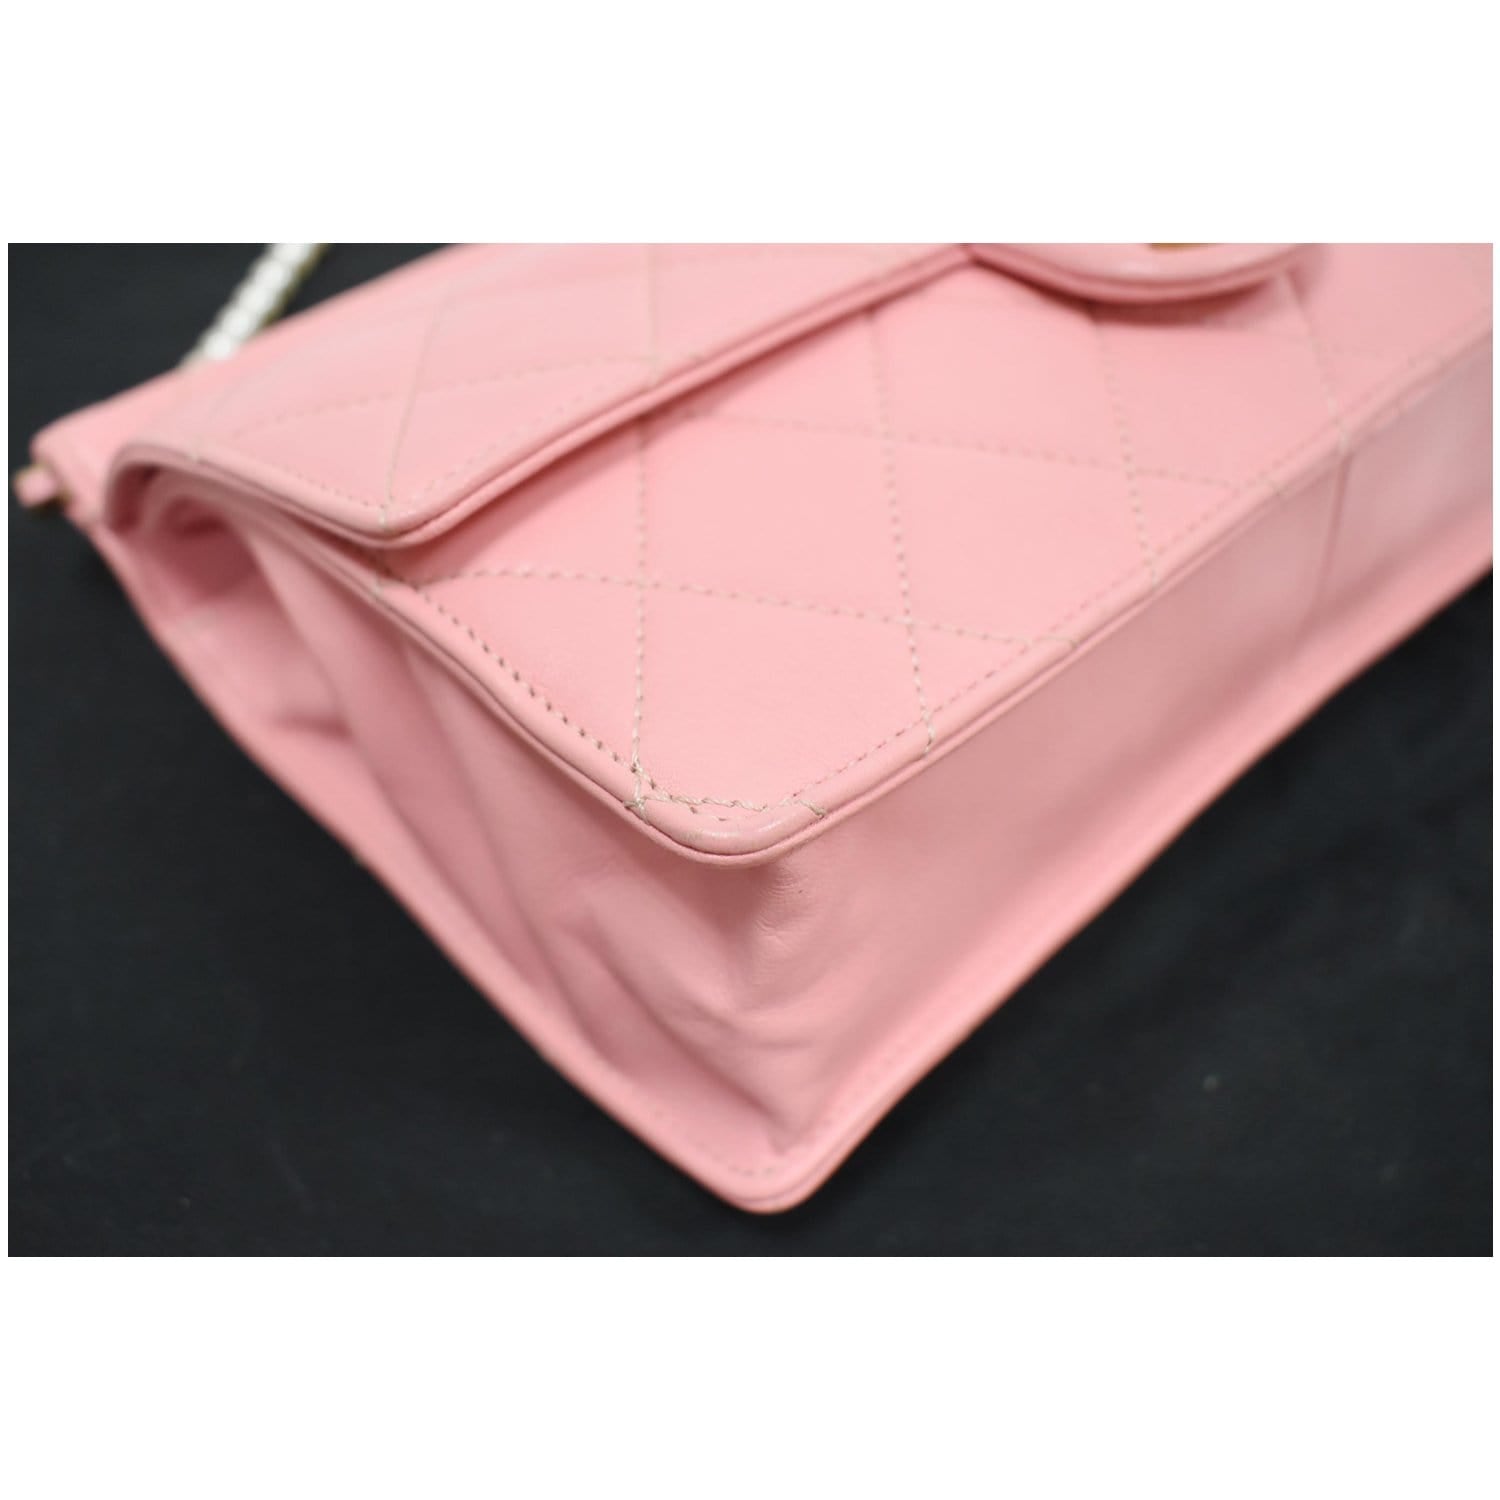 CHANEL Matelasse Costume Pearl Leather Shoulder Bag Pink - 25% OFF